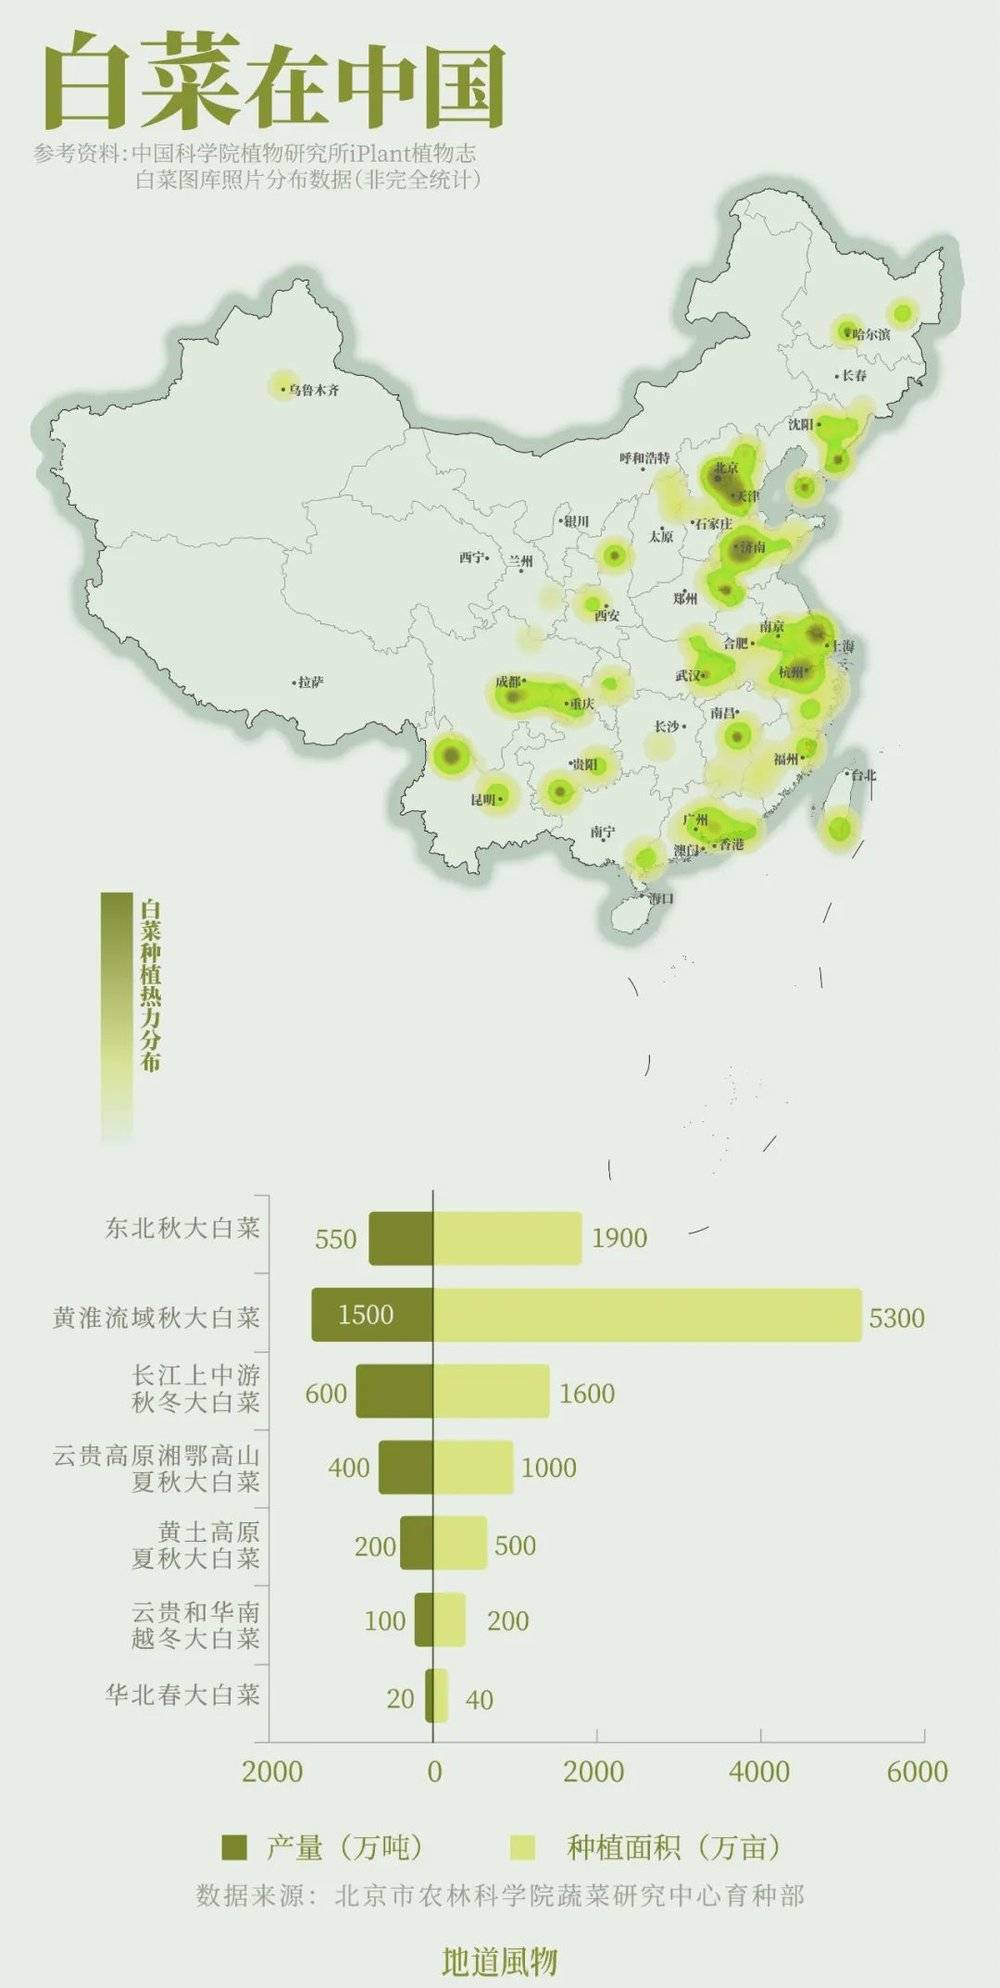 白菜遍布全国各地，是中国栽种面积最大的蔬菜，对于北方来说，它是冬储最重要的蔬菜。制图 / 孙璐、吴玖洋